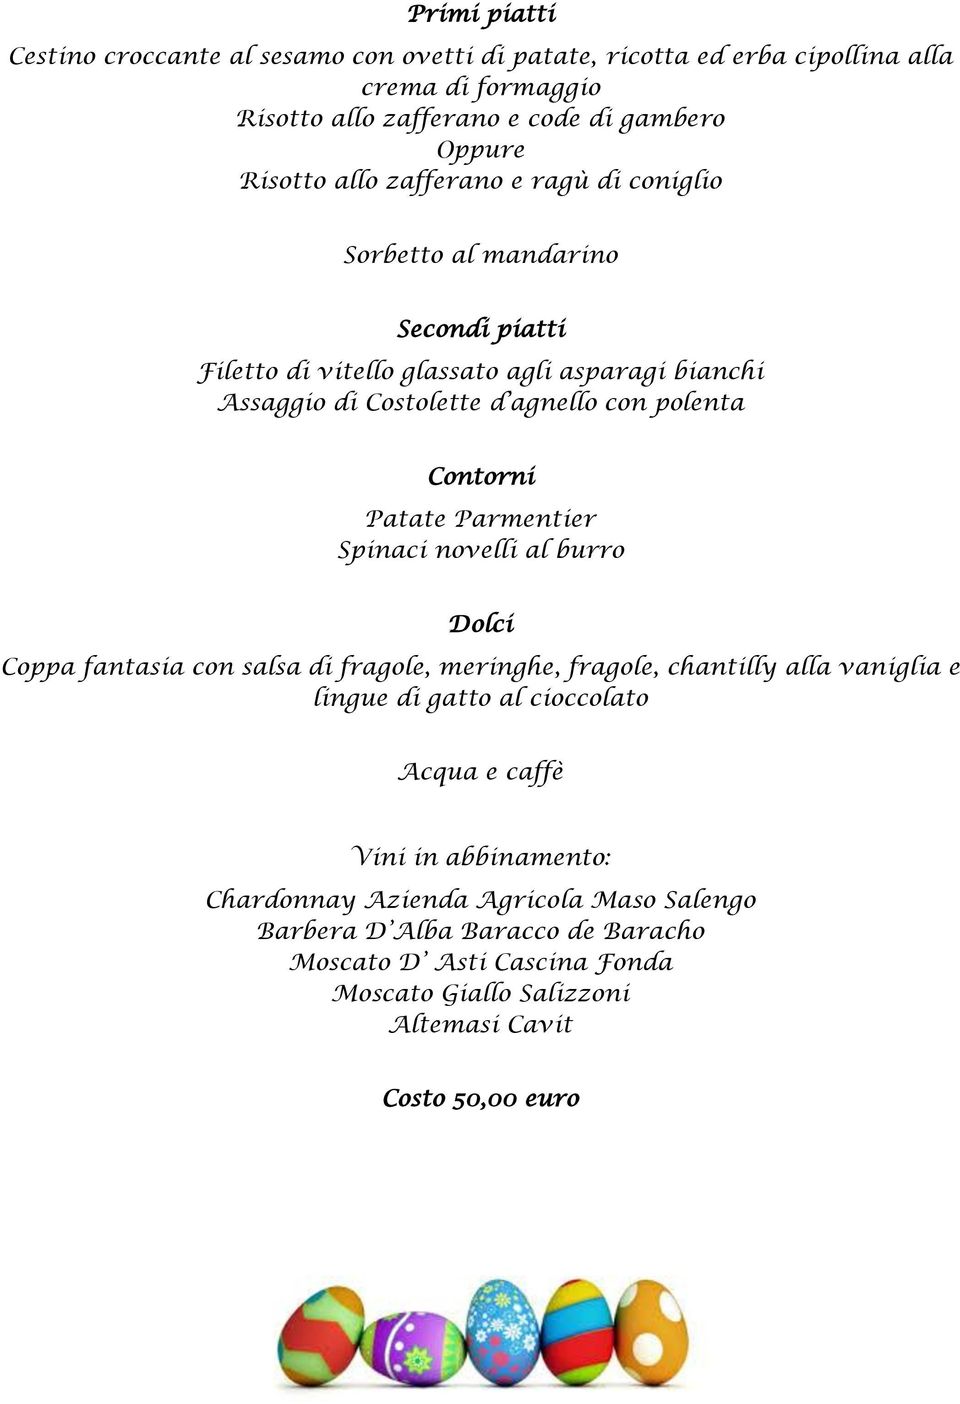 Parmentier Spinaci novelli al burro Coppa fantasia con salsa di fragole, meringhe, fragole, chantilly alla vaniglia e lingue di gatto al cioccolato Acqua e caffè Vini